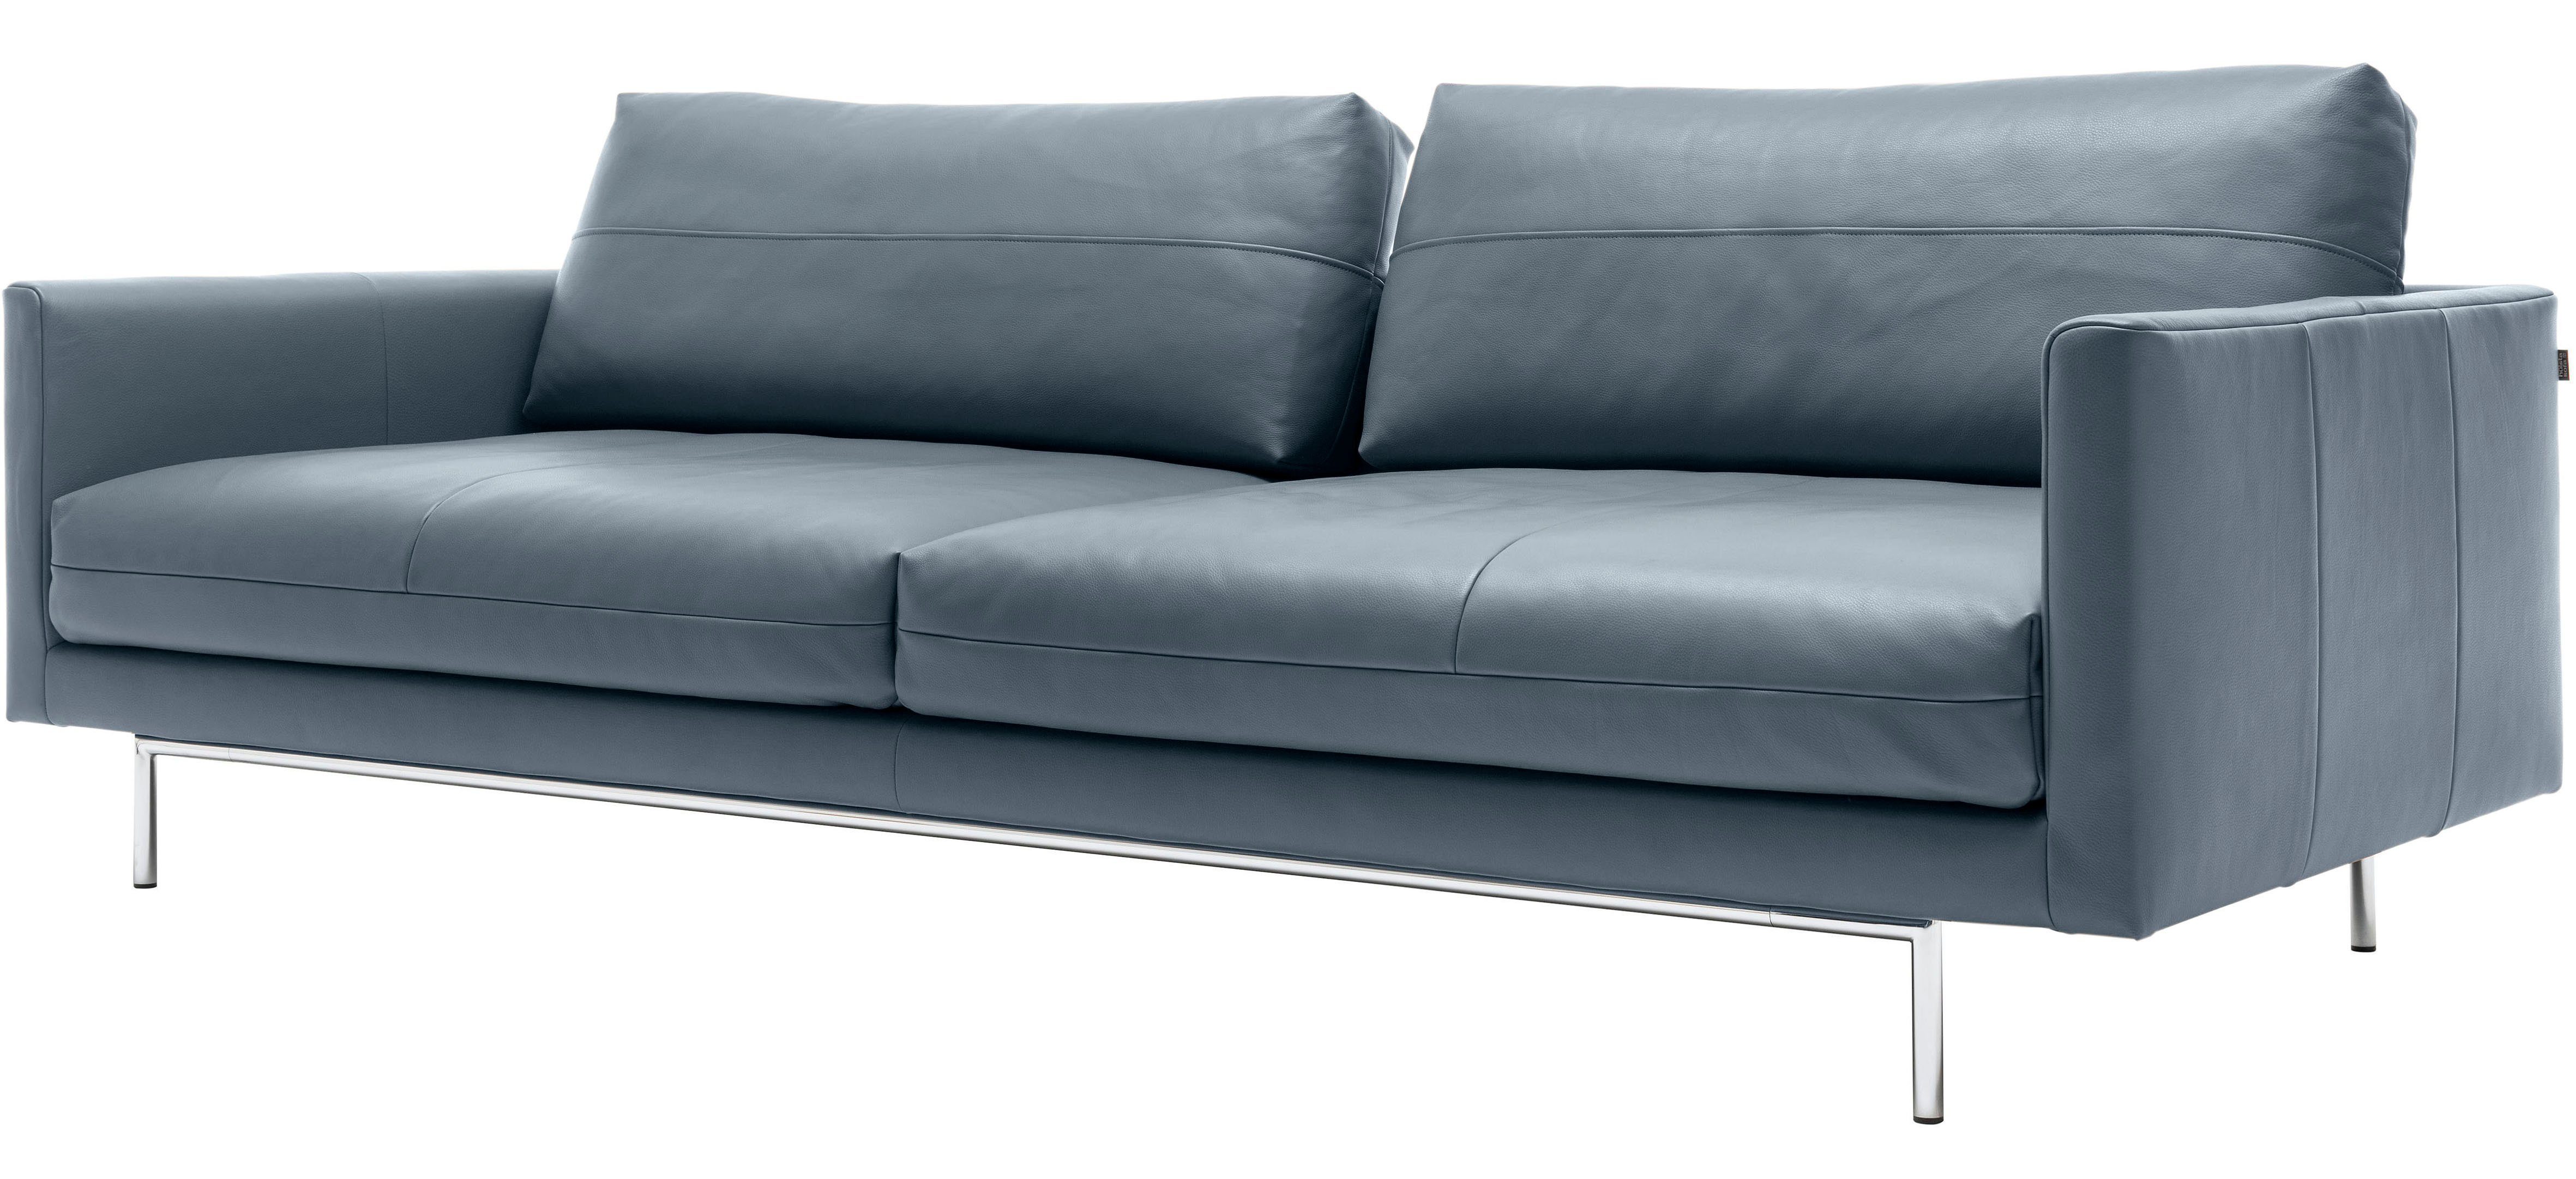 | hülsta blaugrau 4-Sitzer blaugrau sofa